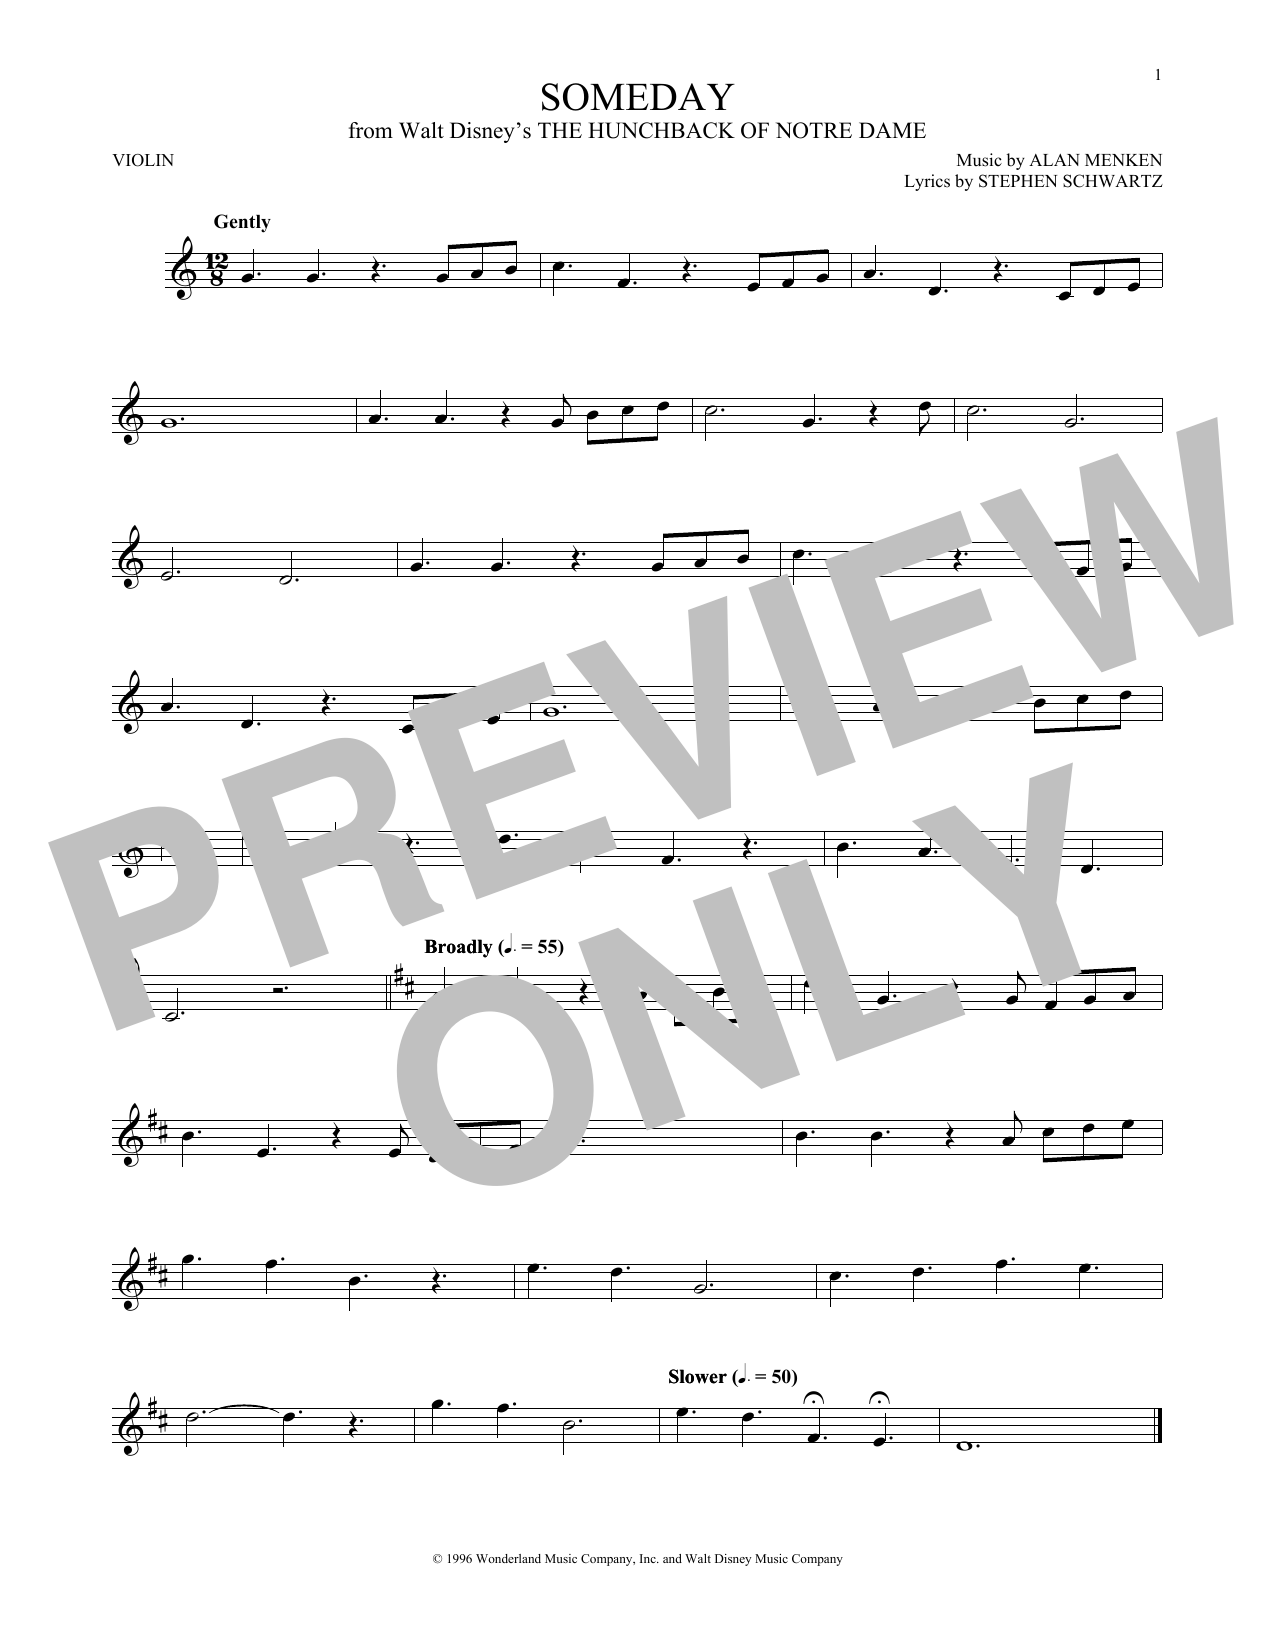 Alan Menken Someday (Esmeralda's Prayer) Sheet Music Notes & Chords for Violin - Download or Print PDF